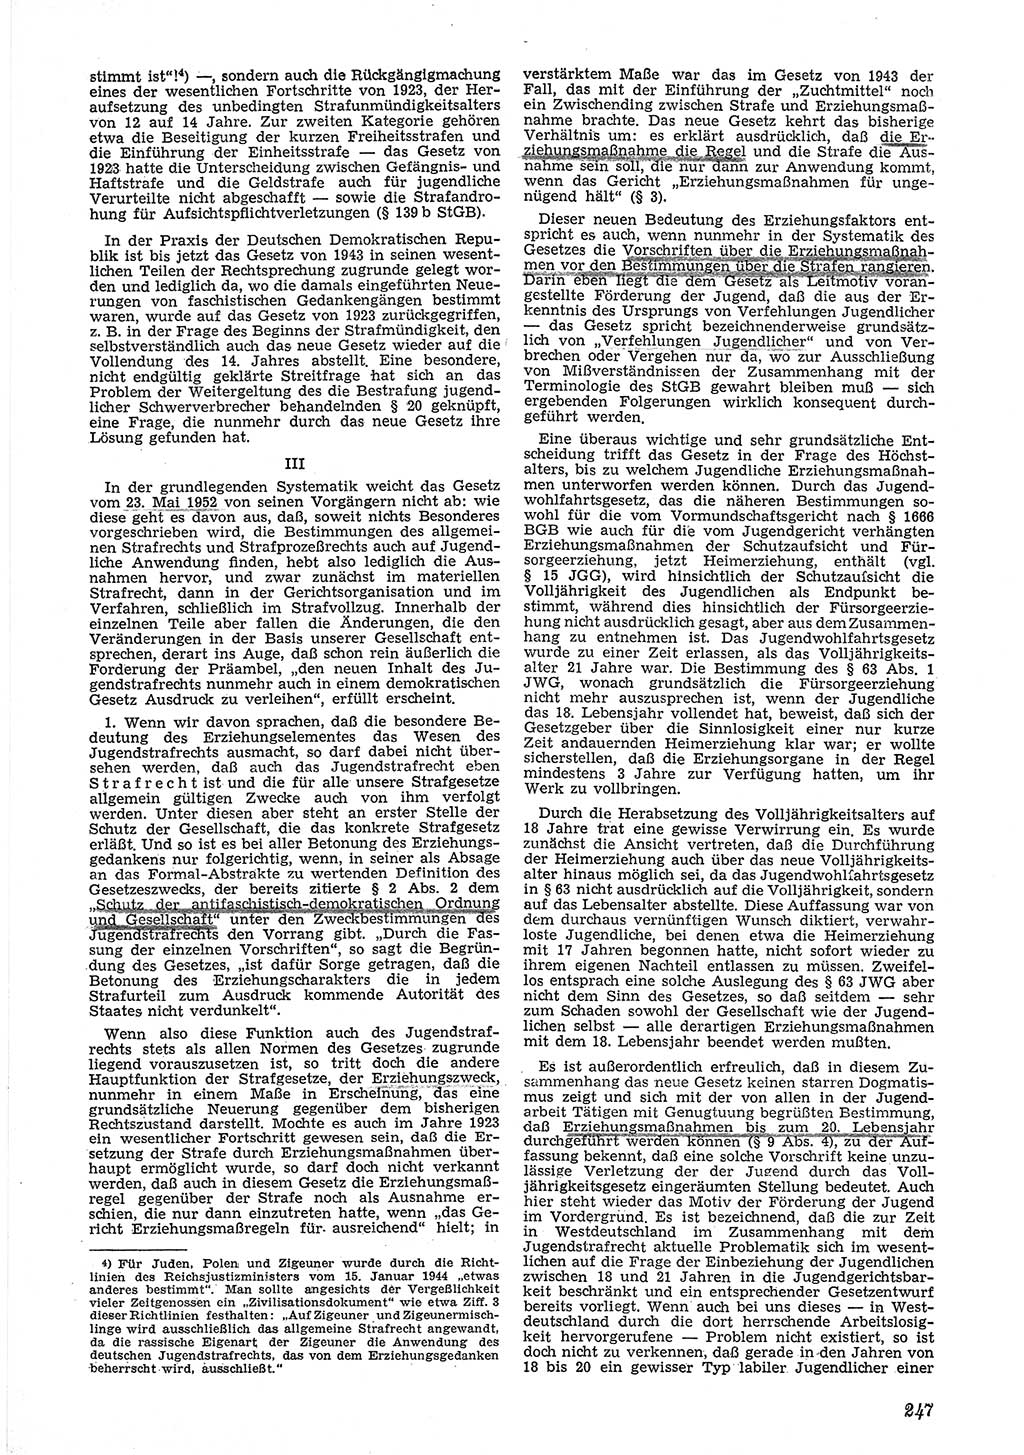 Neue Justiz (NJ), Zeitschrift für Recht und Rechtswissenschaft [Deutsche Demokratische Republik (DDR)], 6. Jahrgang 1952, Seite 247 (NJ DDR 1952, S. 247)